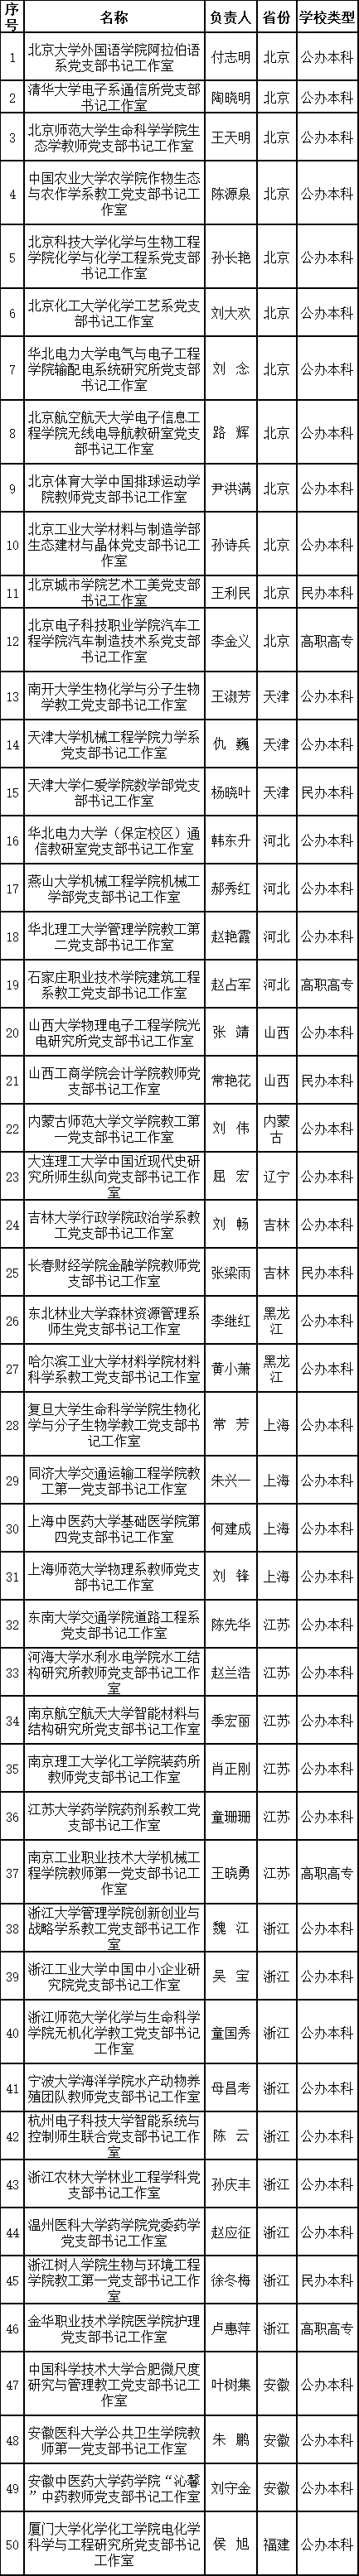 教育部第二批高校“双带头人”工作室公布，广东入选10个